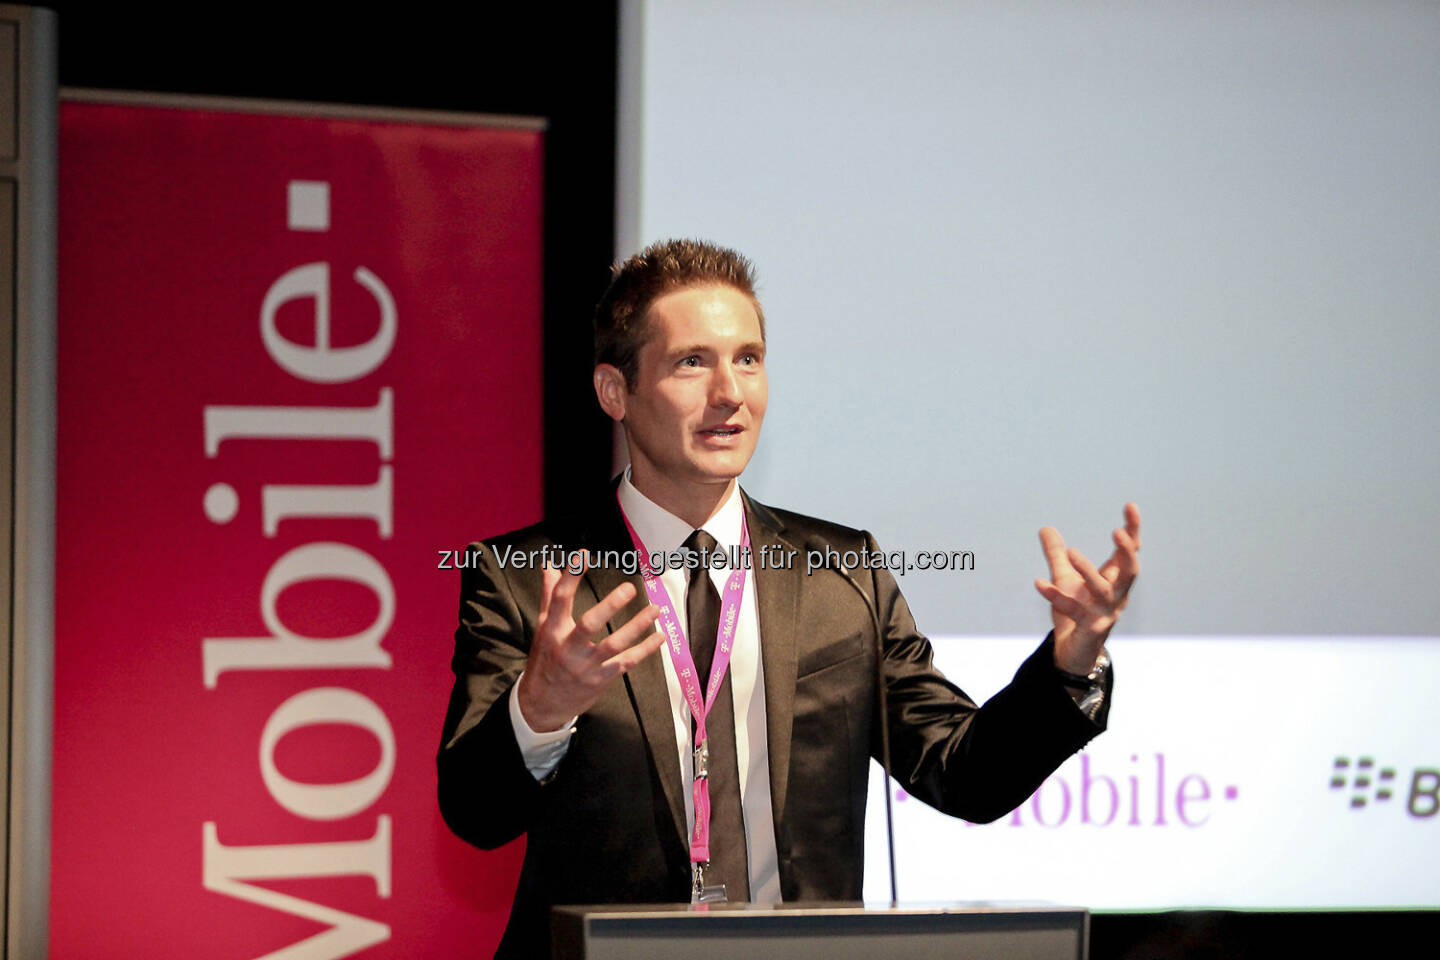 Josef Mantl: 2012 war für mich unternehmerisch das Jahr von mobile und der Verstärkung der 3 F: Fachpersonal, Fachkonferenzen, Fachpublikationen